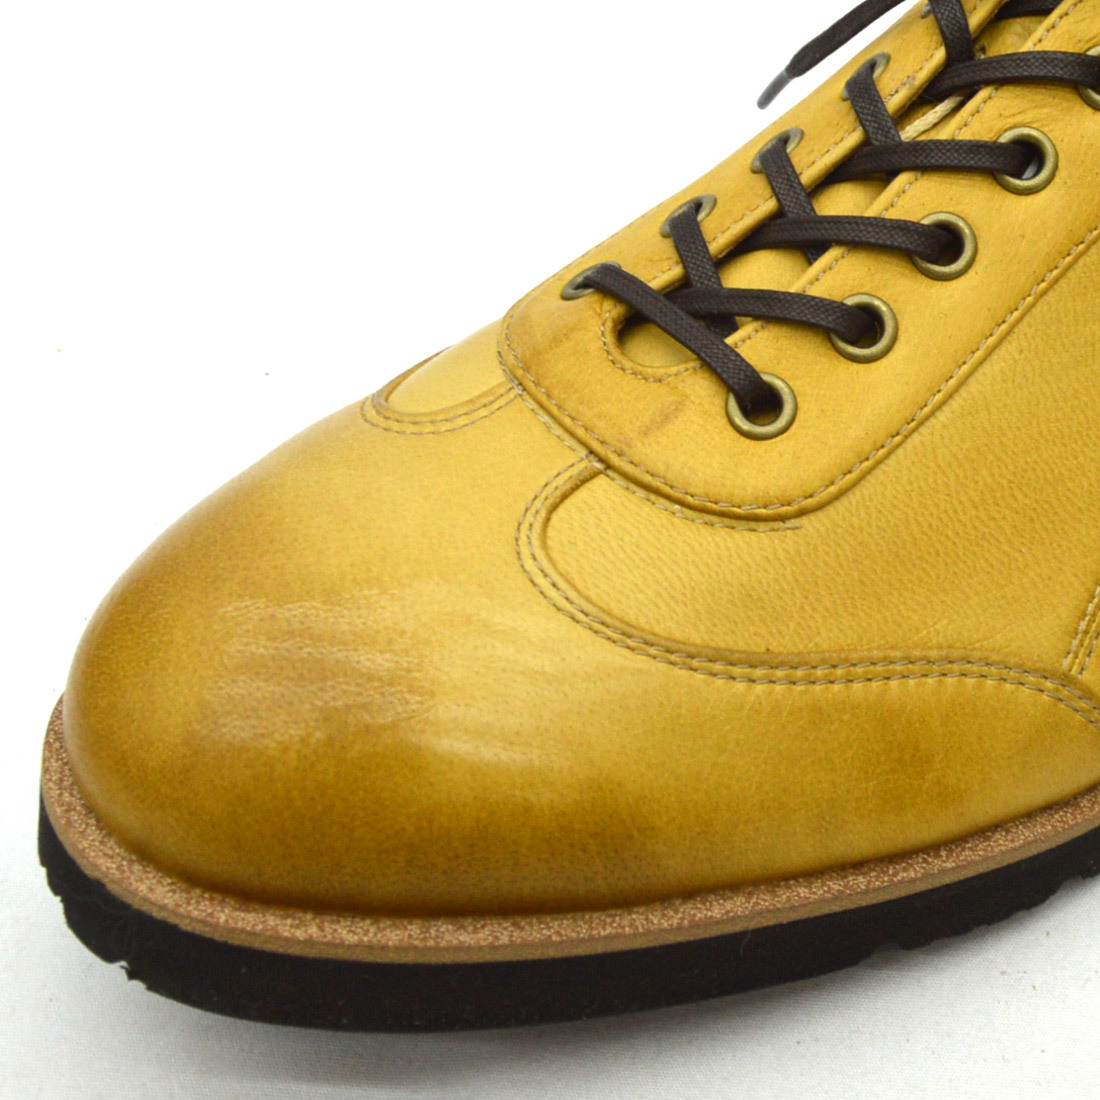 ^YAMATOism Yamato izm casual shoes YA-3301 deer leather DeerSkin leather shoes black Black black 26.5cm (0910010338-bk-s265)